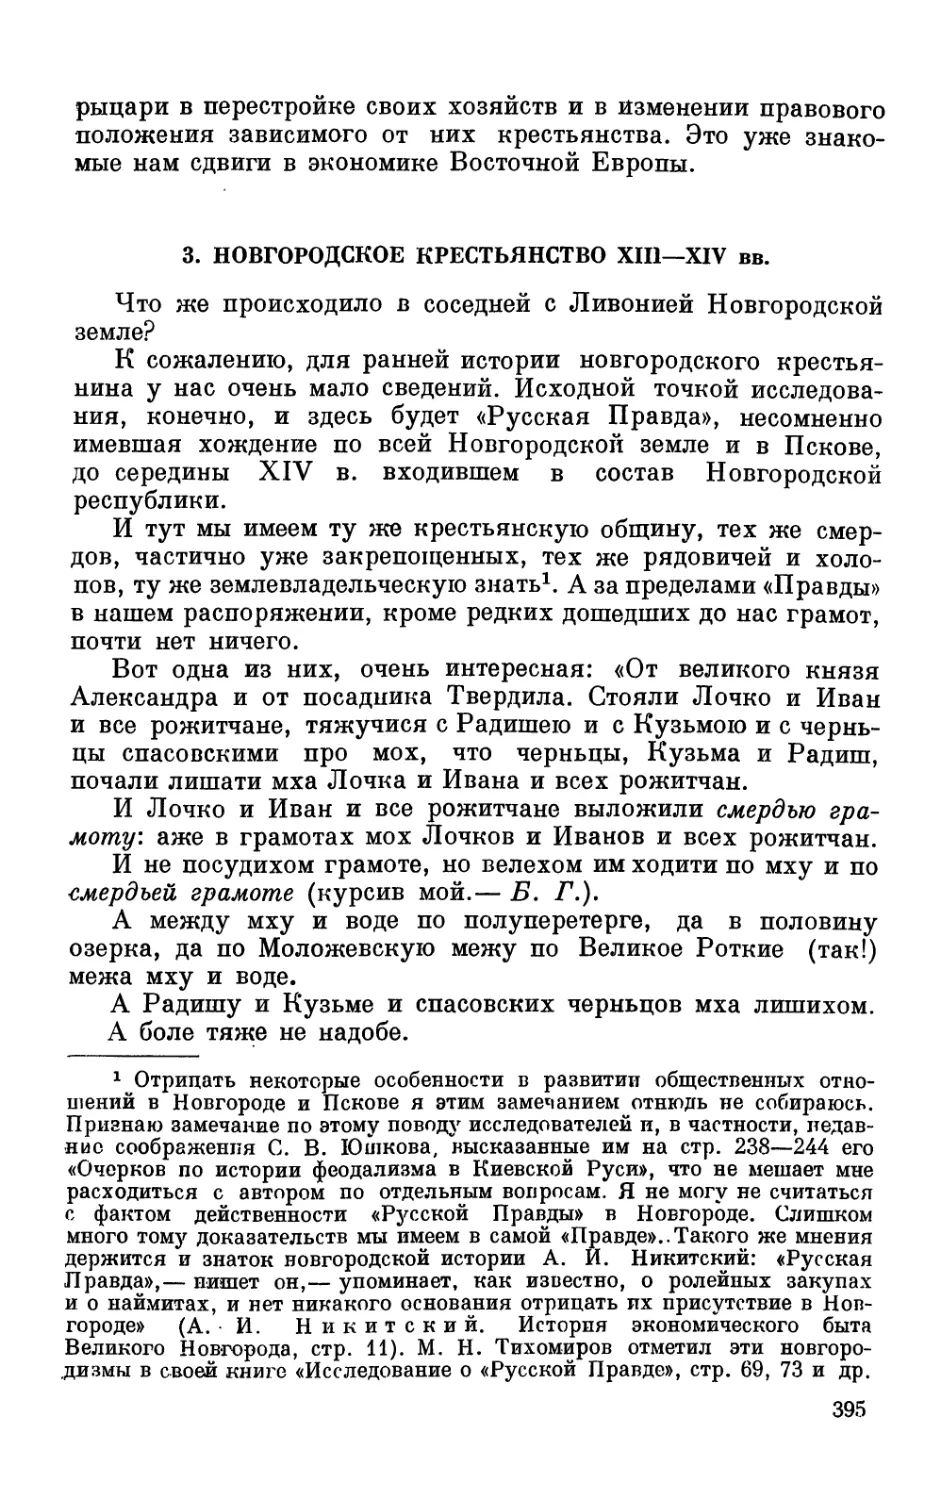 3. Новгородское крестьянство XIII—XIV вв